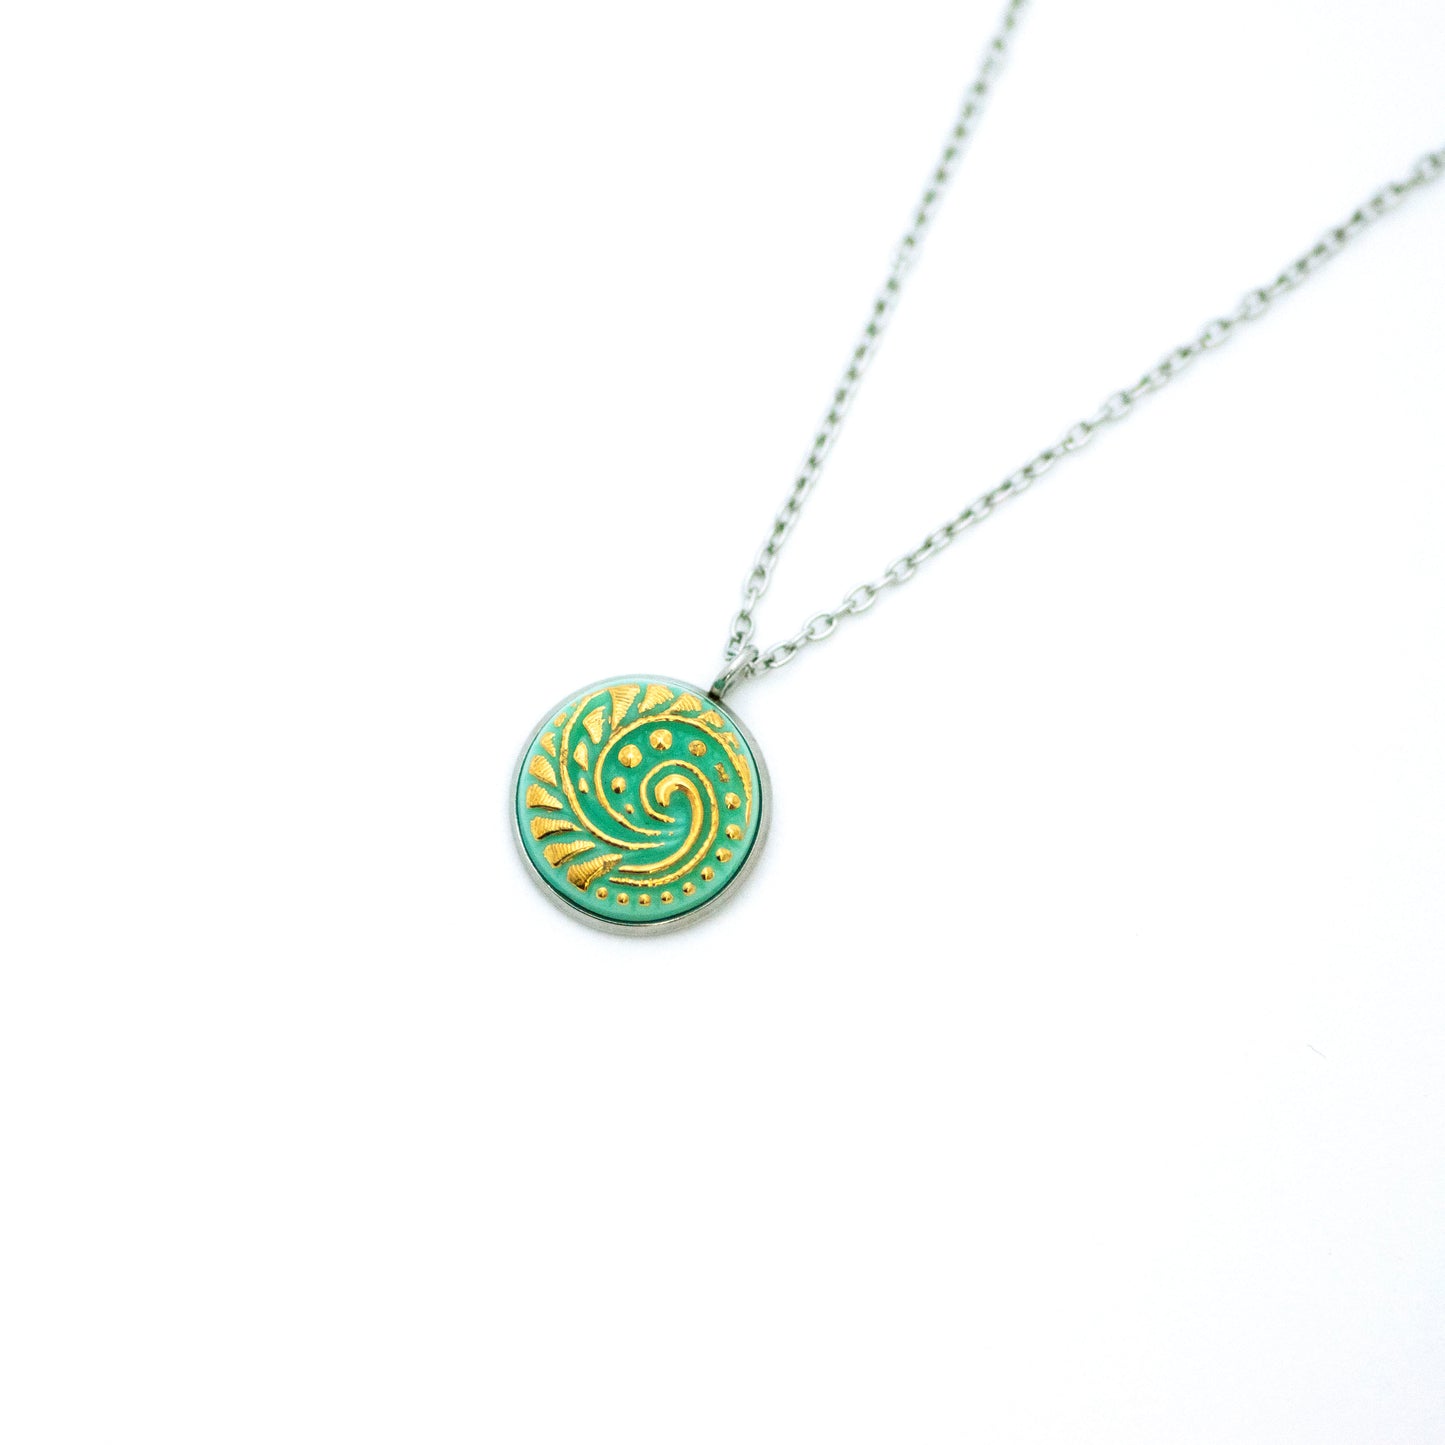 Czech Glass Button Necklace - Light Turquoise Ocean Swirl Uranium Glass